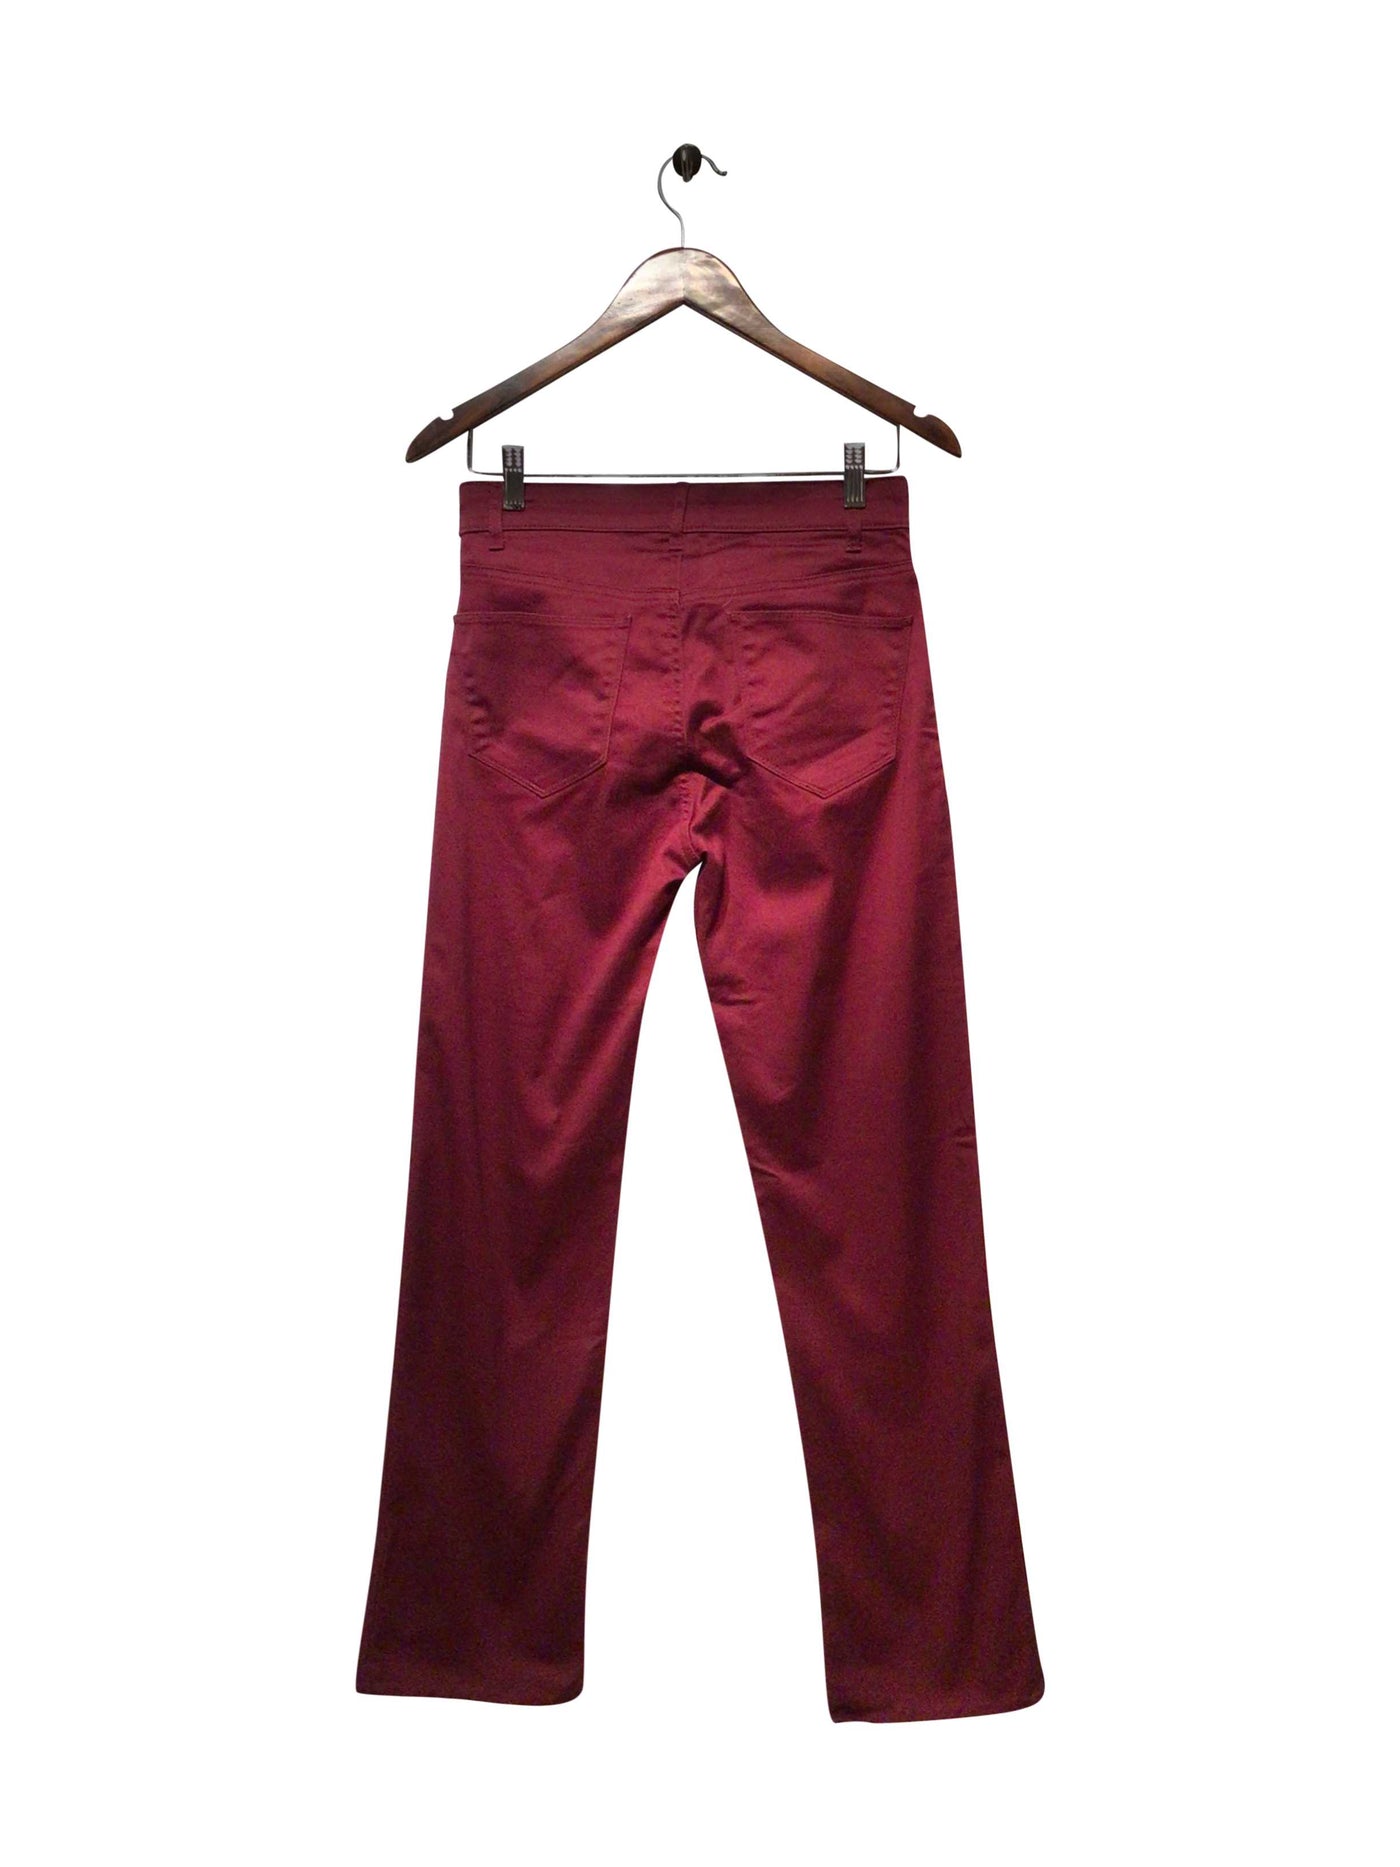 DENVER HAYES Regular fit Pant in Red  -  32  13.99 Koop